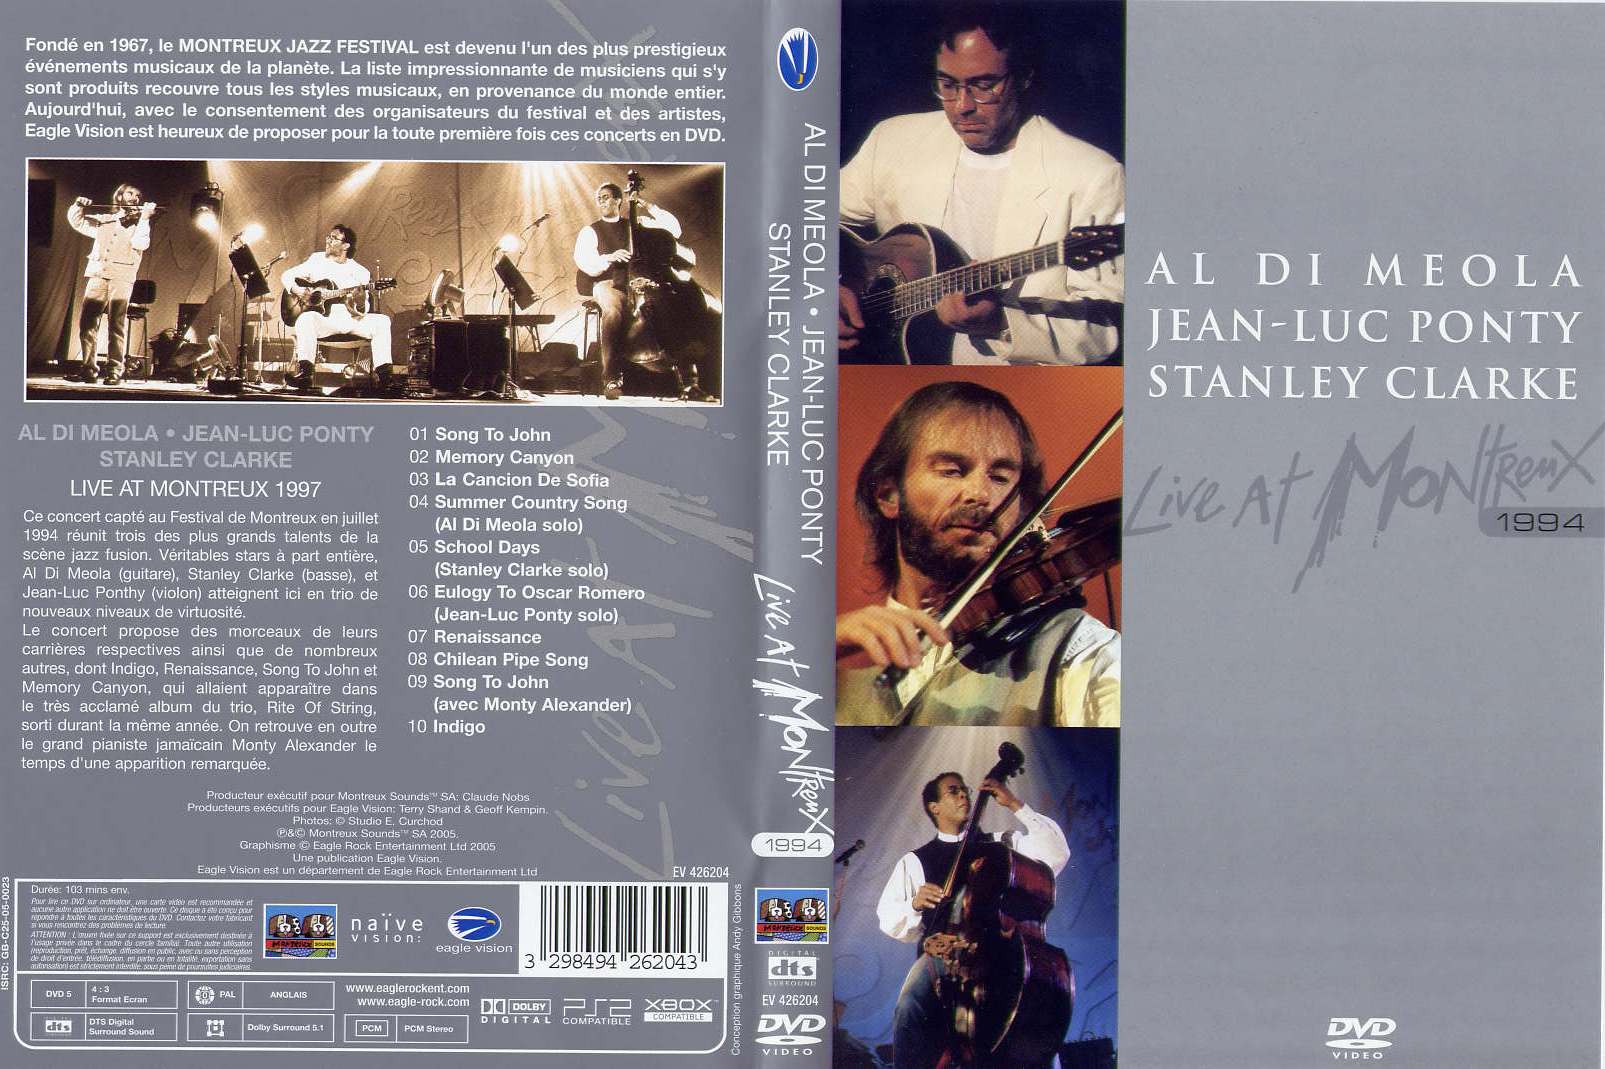 Jaquette DVD Al di Meola Jean-Luc Ponty Stanley Clarke - Live at Montreux 1994